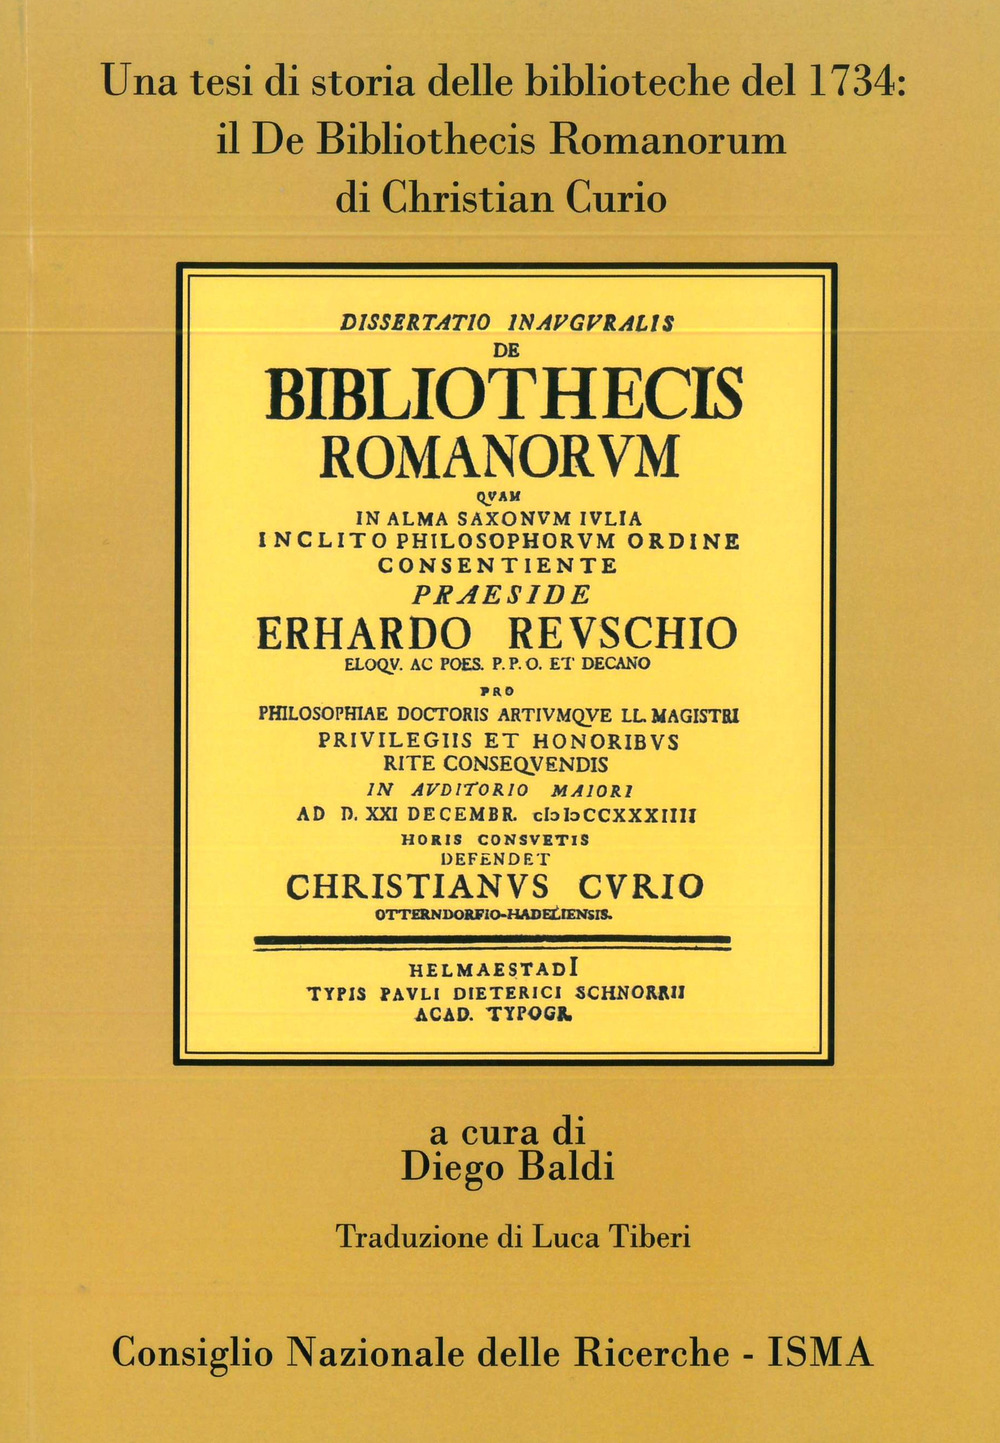 Il De Bibliothecis Romanorum di Christian Curio. Una tesi di storia delle biblioteche del 1734